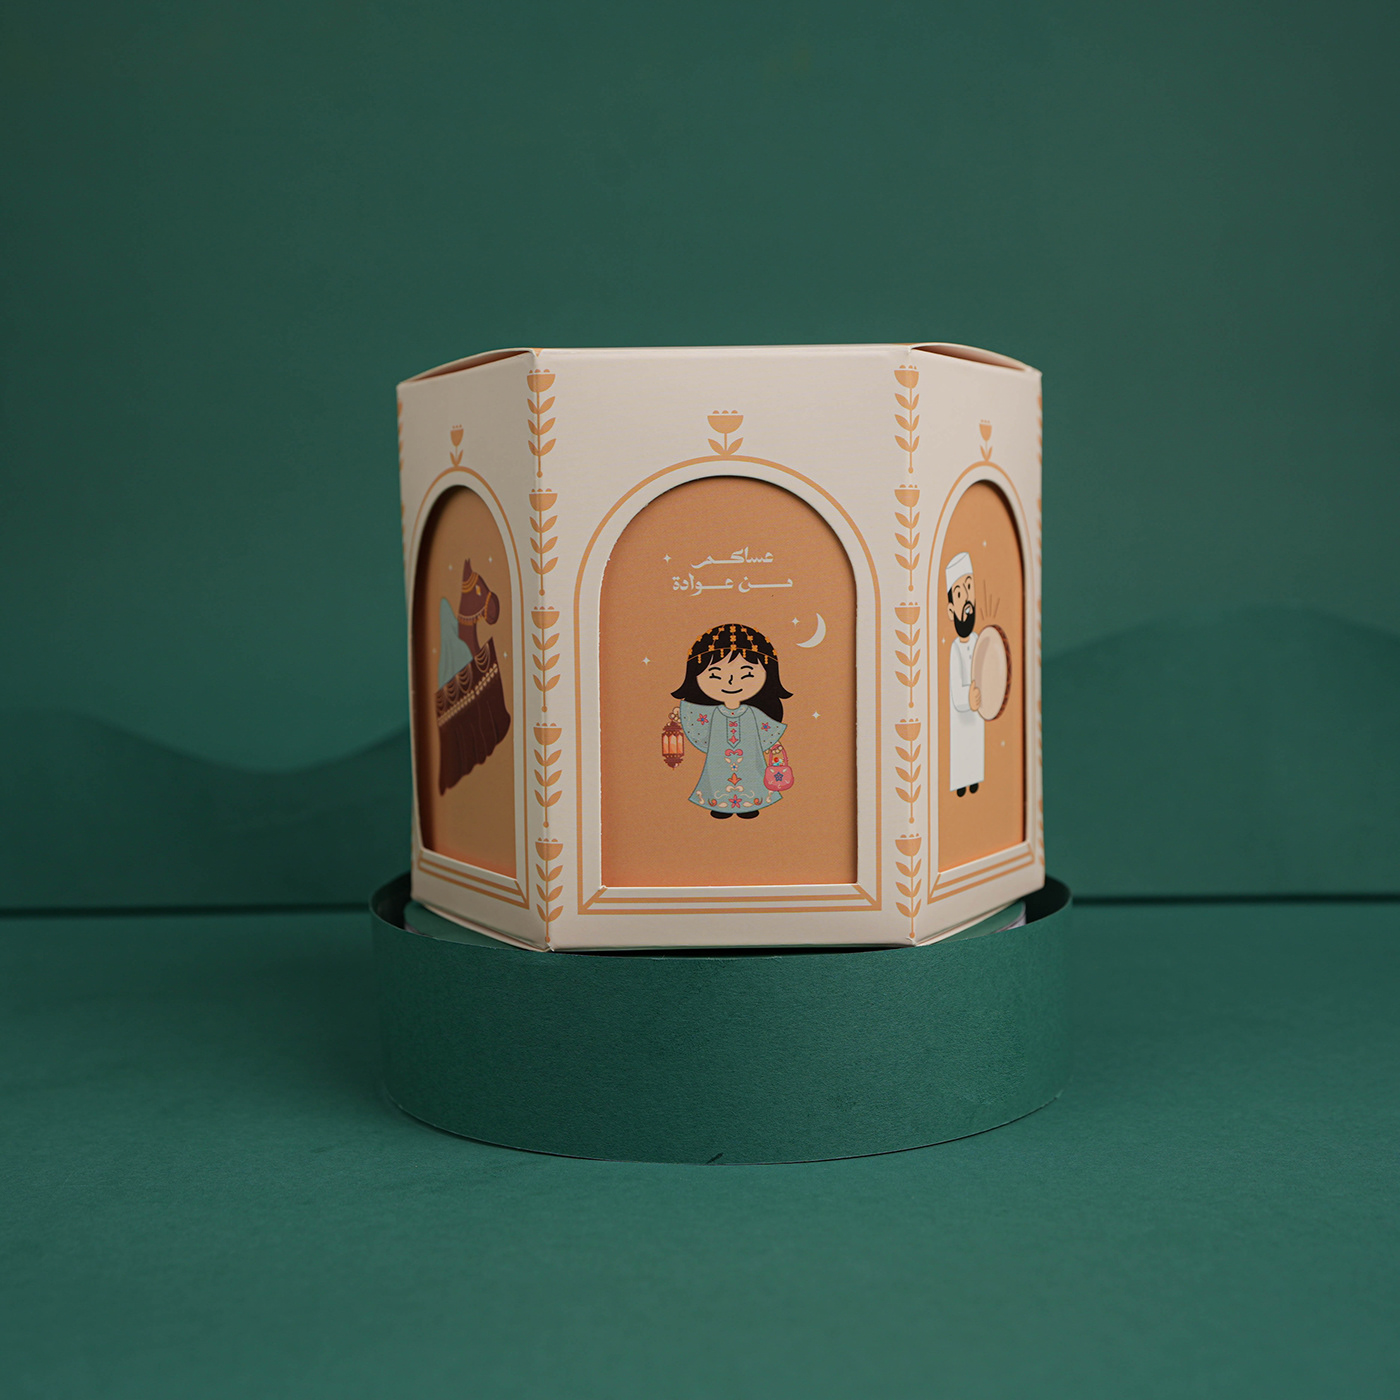 boxdesign Packaging ramadan Eid islamic EidMubarak gergaoon grgaoon sweetsbox traditionalbox